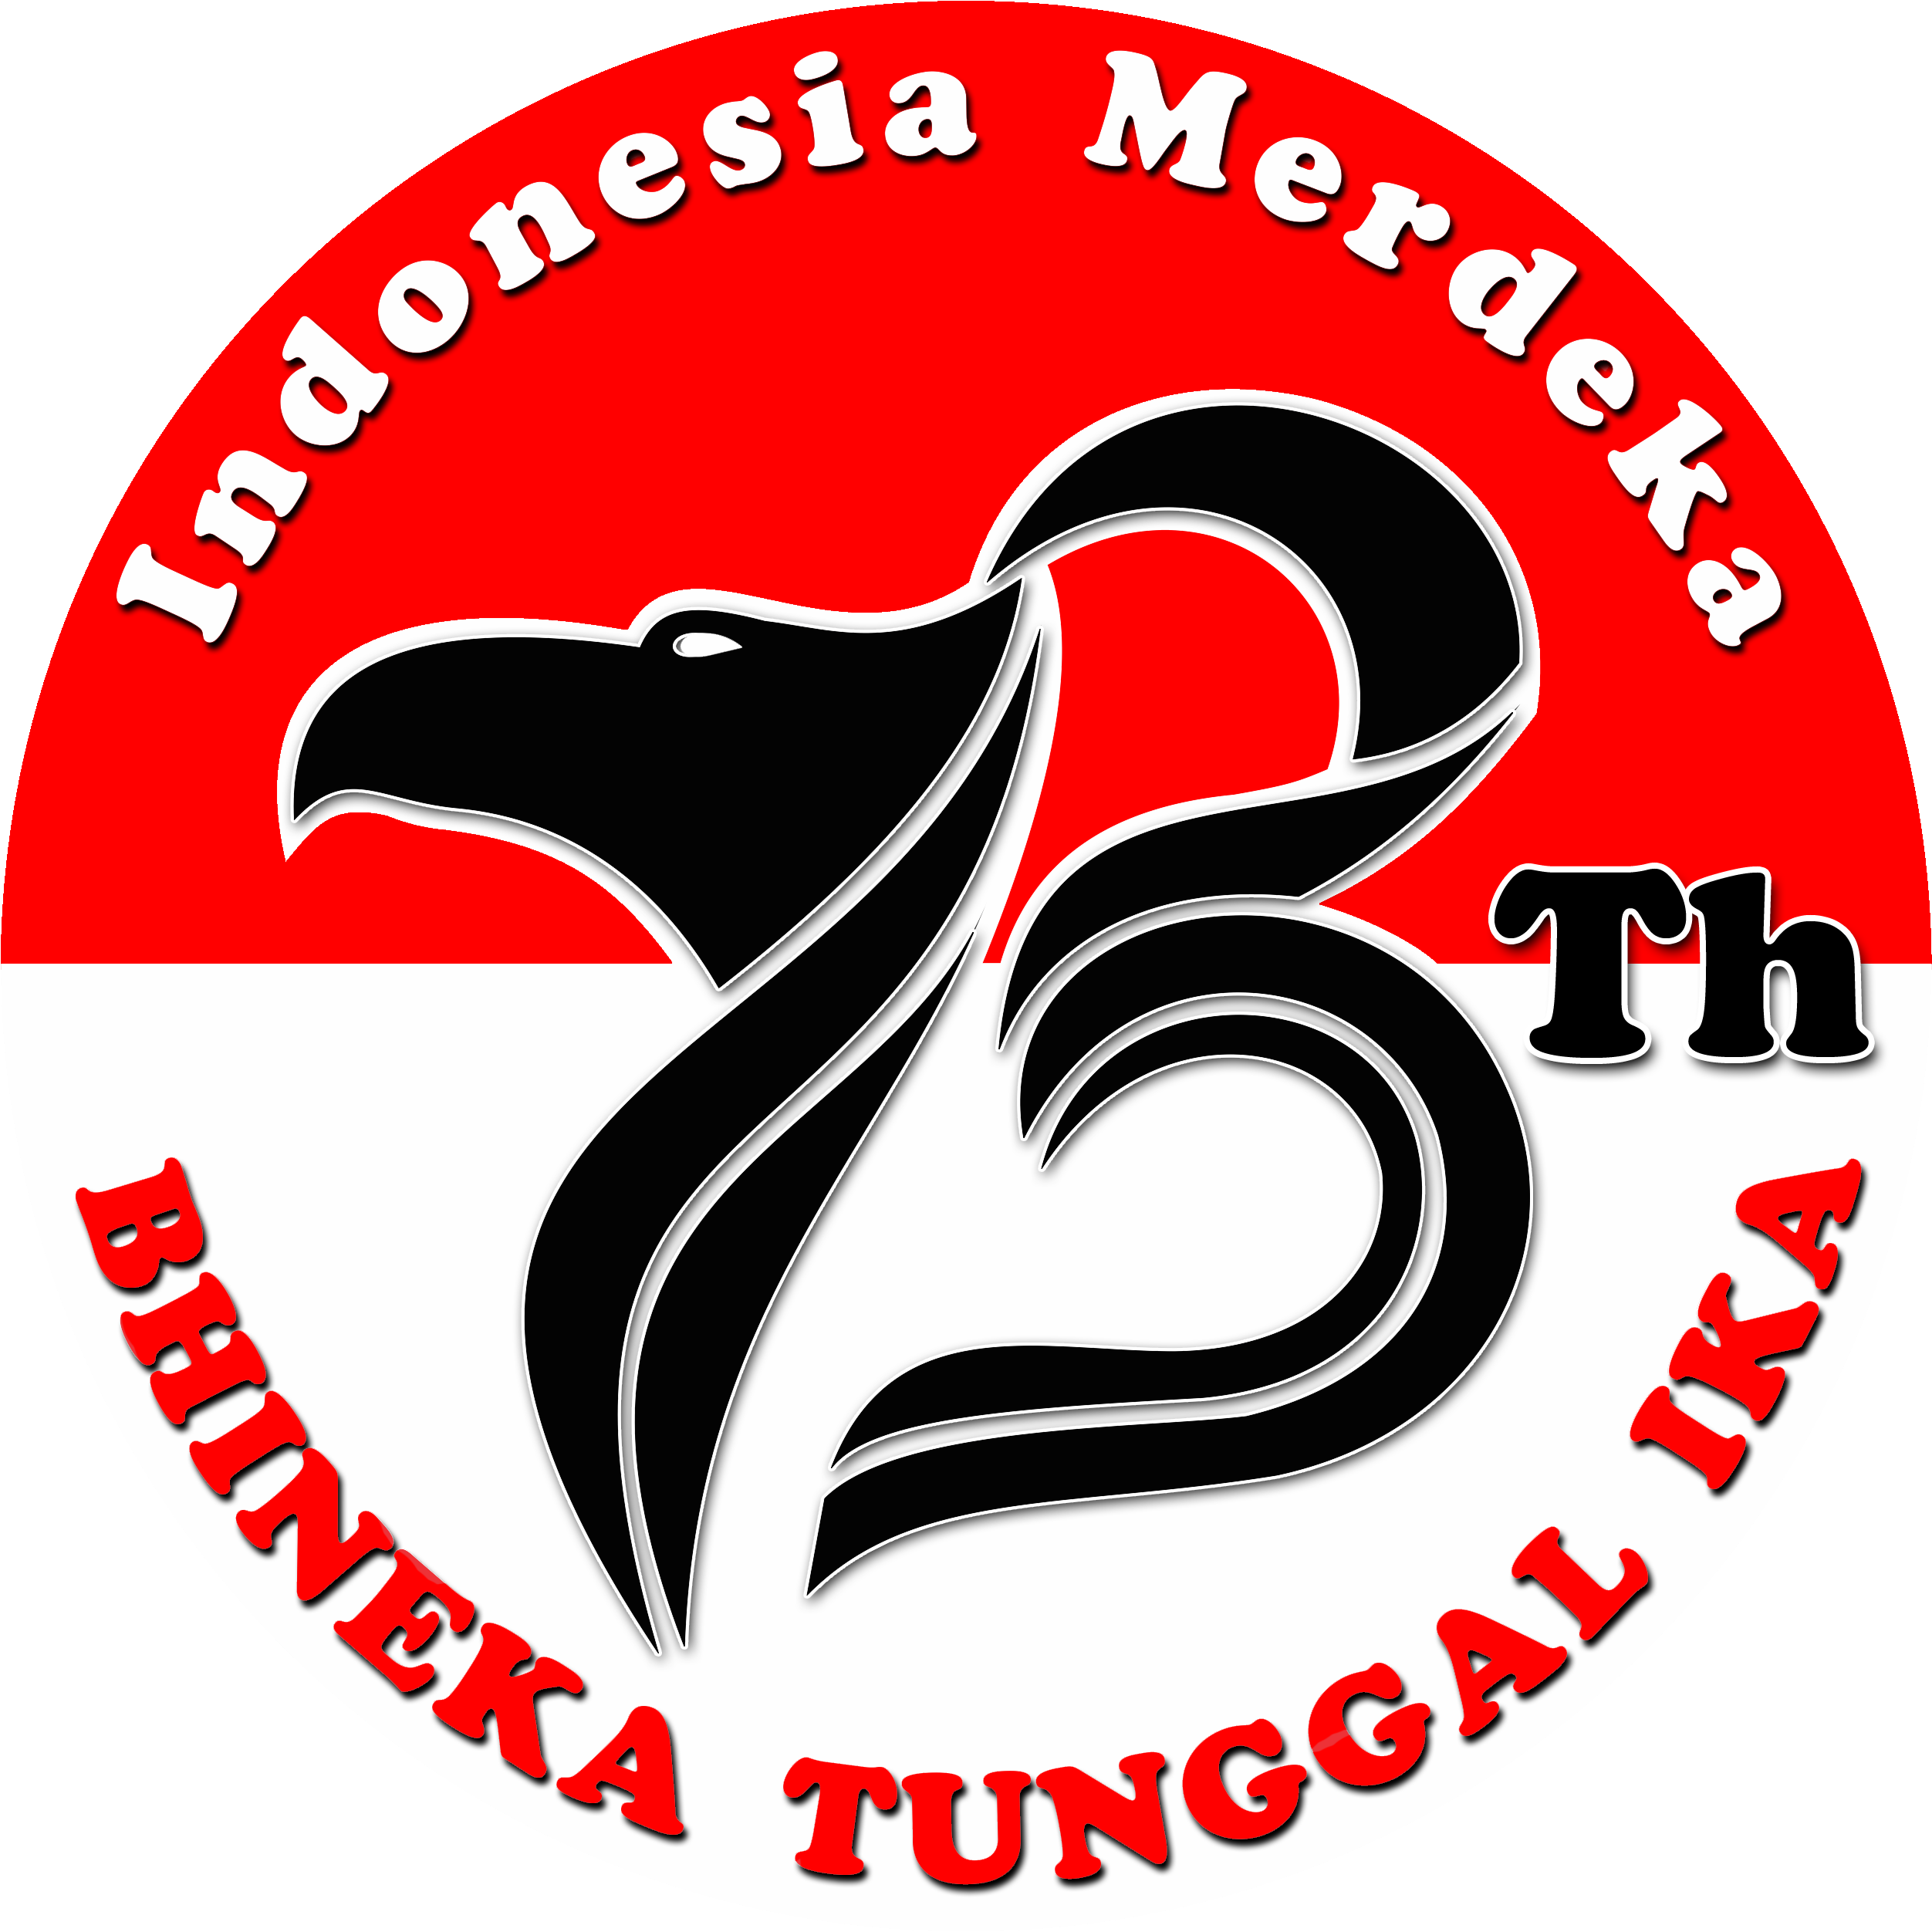 Indonesian Garuda Emblem Celebration